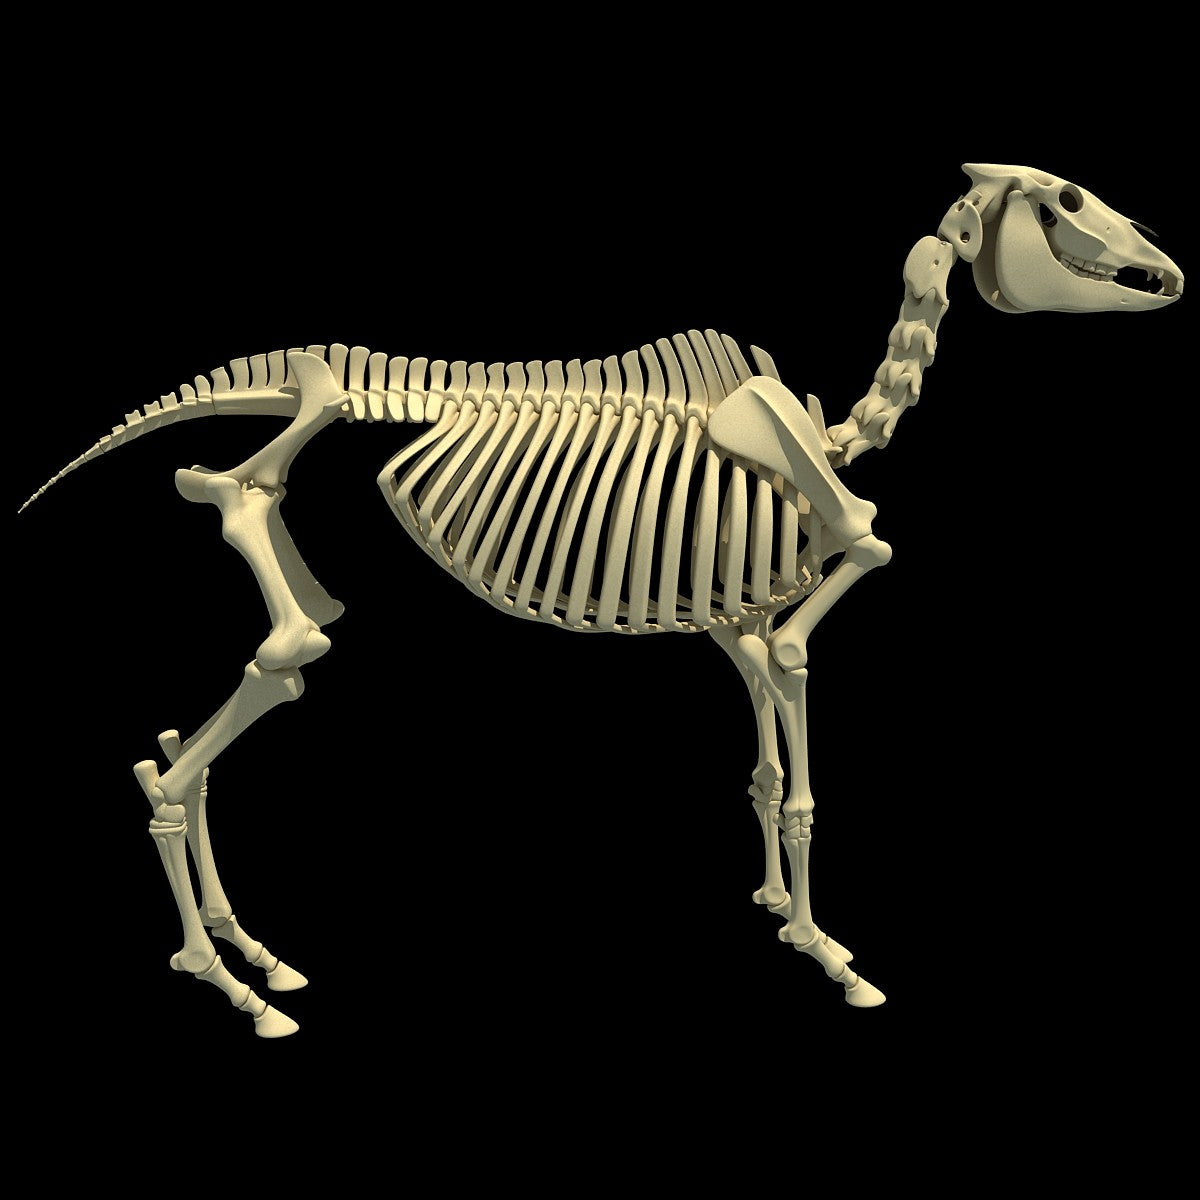 Horse Skeleton 3D Model